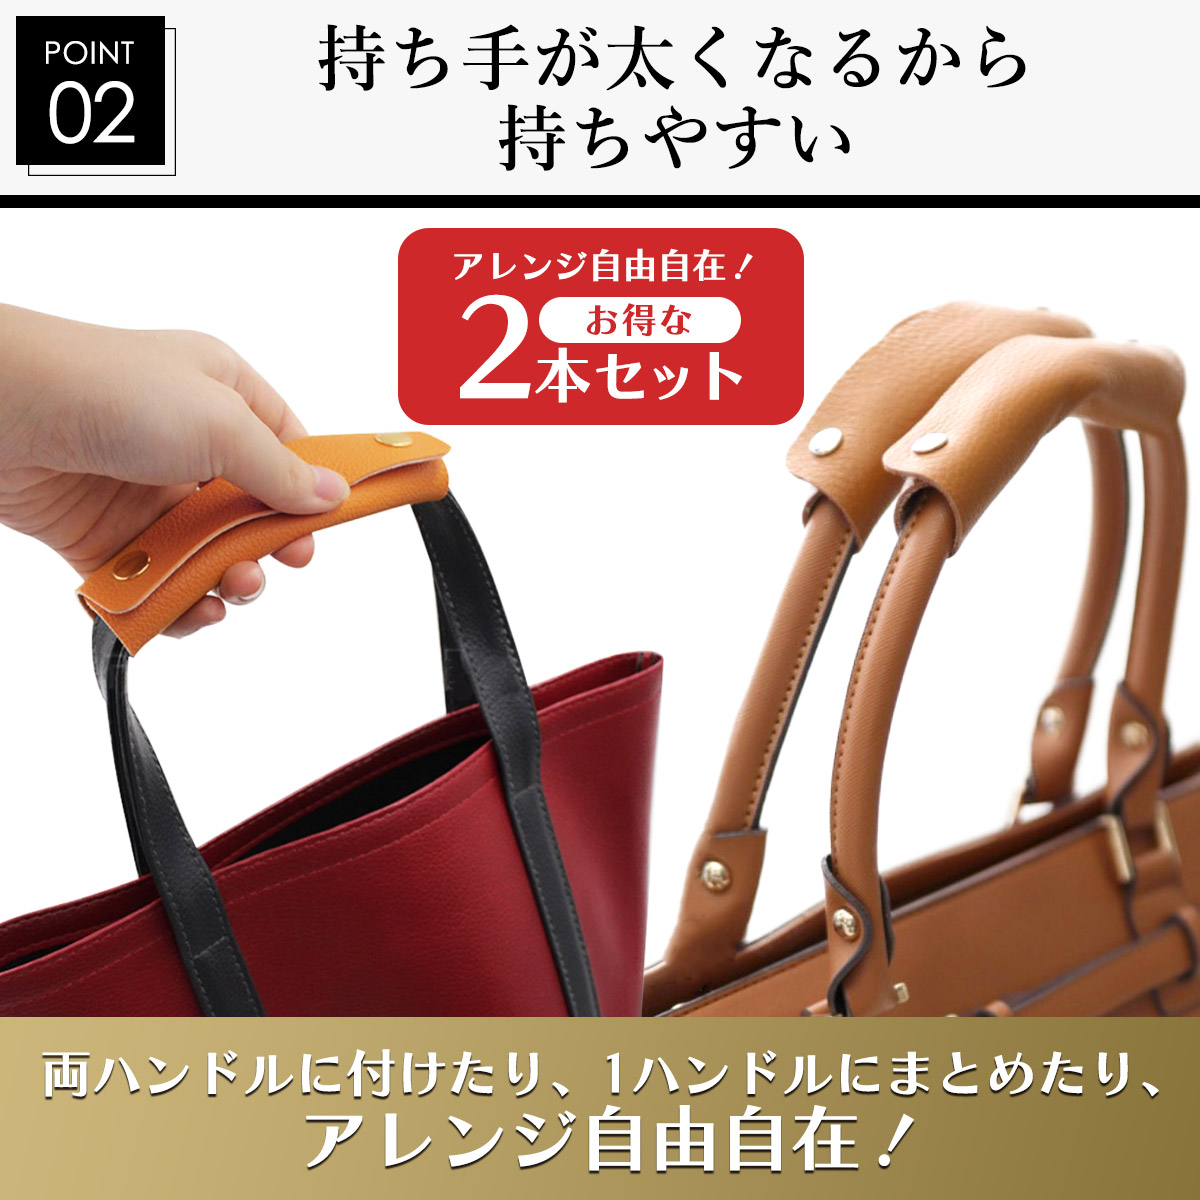  держать рука покрытие сумка оплетка руля брать . в наличии рука покрытие модный портфель большая сумка портфель 